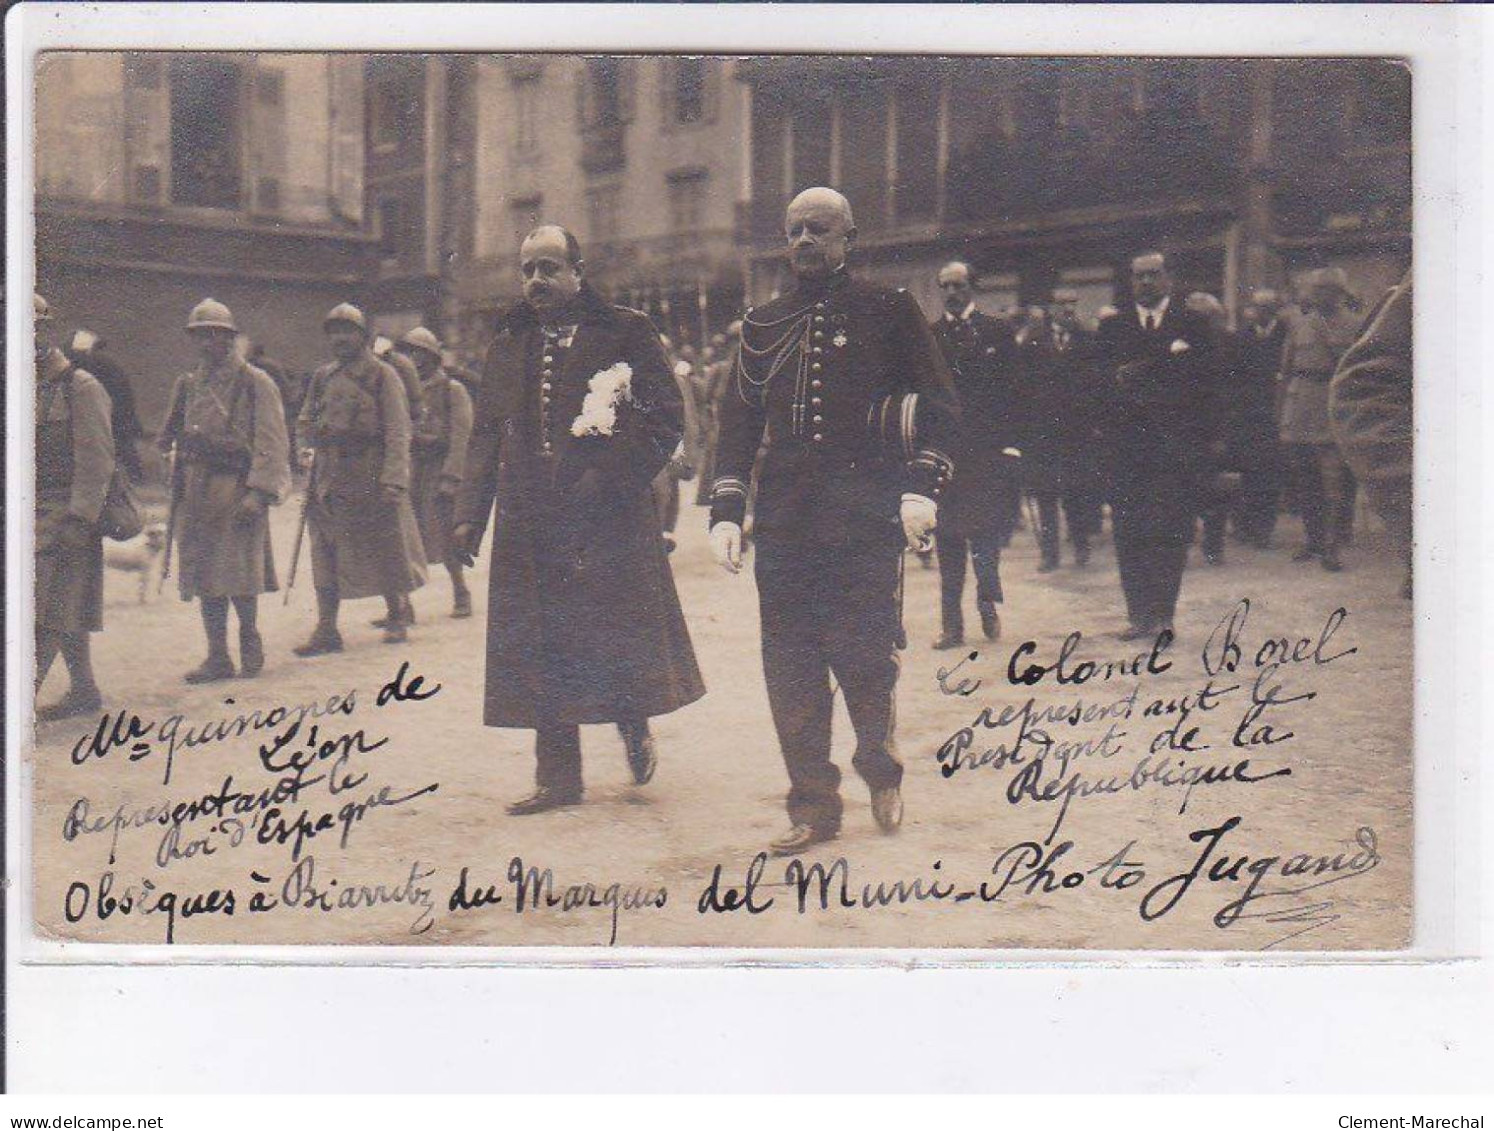 BIARRITZ: Autographe De Jugand,(photographe), Obseques Du Marquis Del Muni - Roi D'espagne Alphonse XIII - Très Bon état - Biarritz